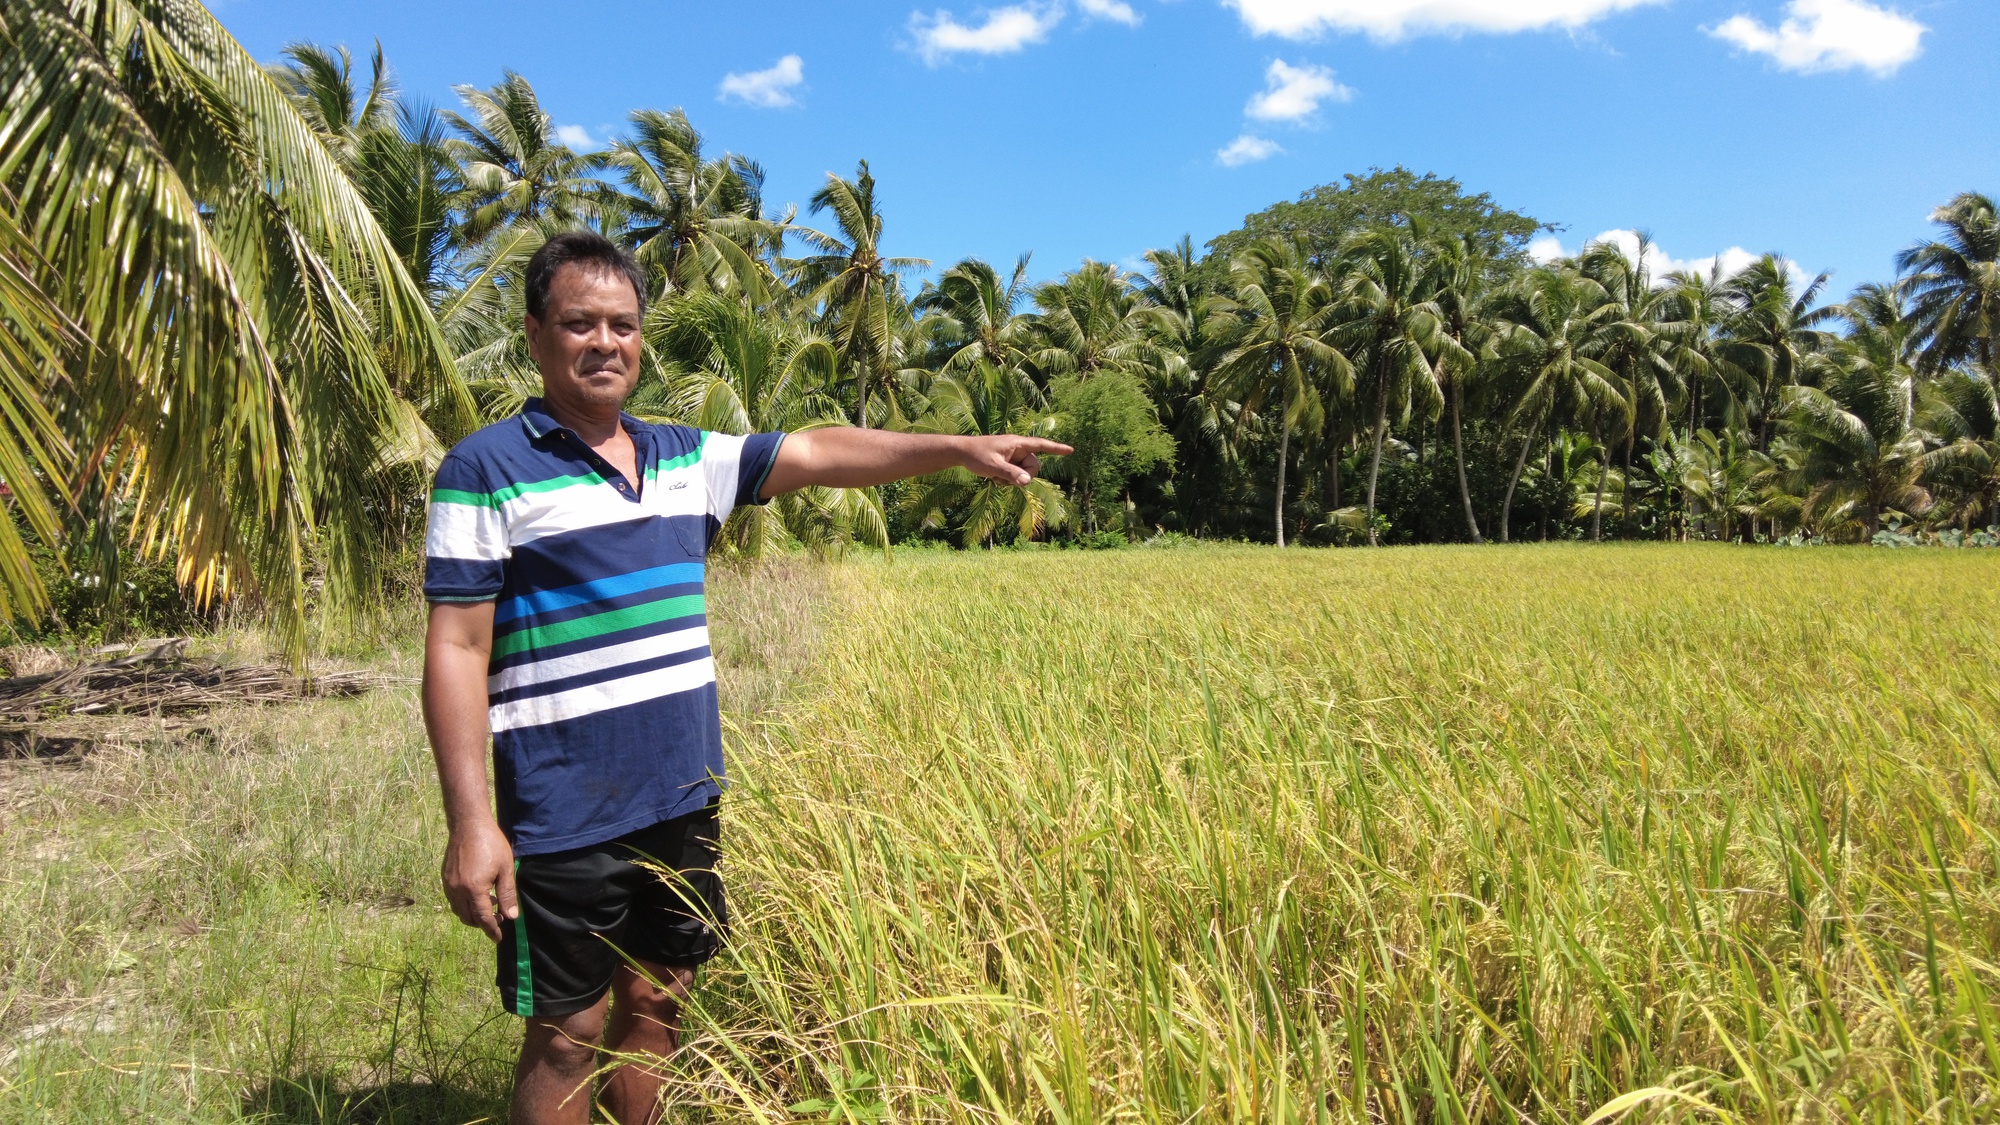 Cách để có đến 6 ha lúa và sắm 10 máy gặt đập liên hợp ở Trà Vinh của Nông dân xuất sắc 2023  - Ảnh 3.